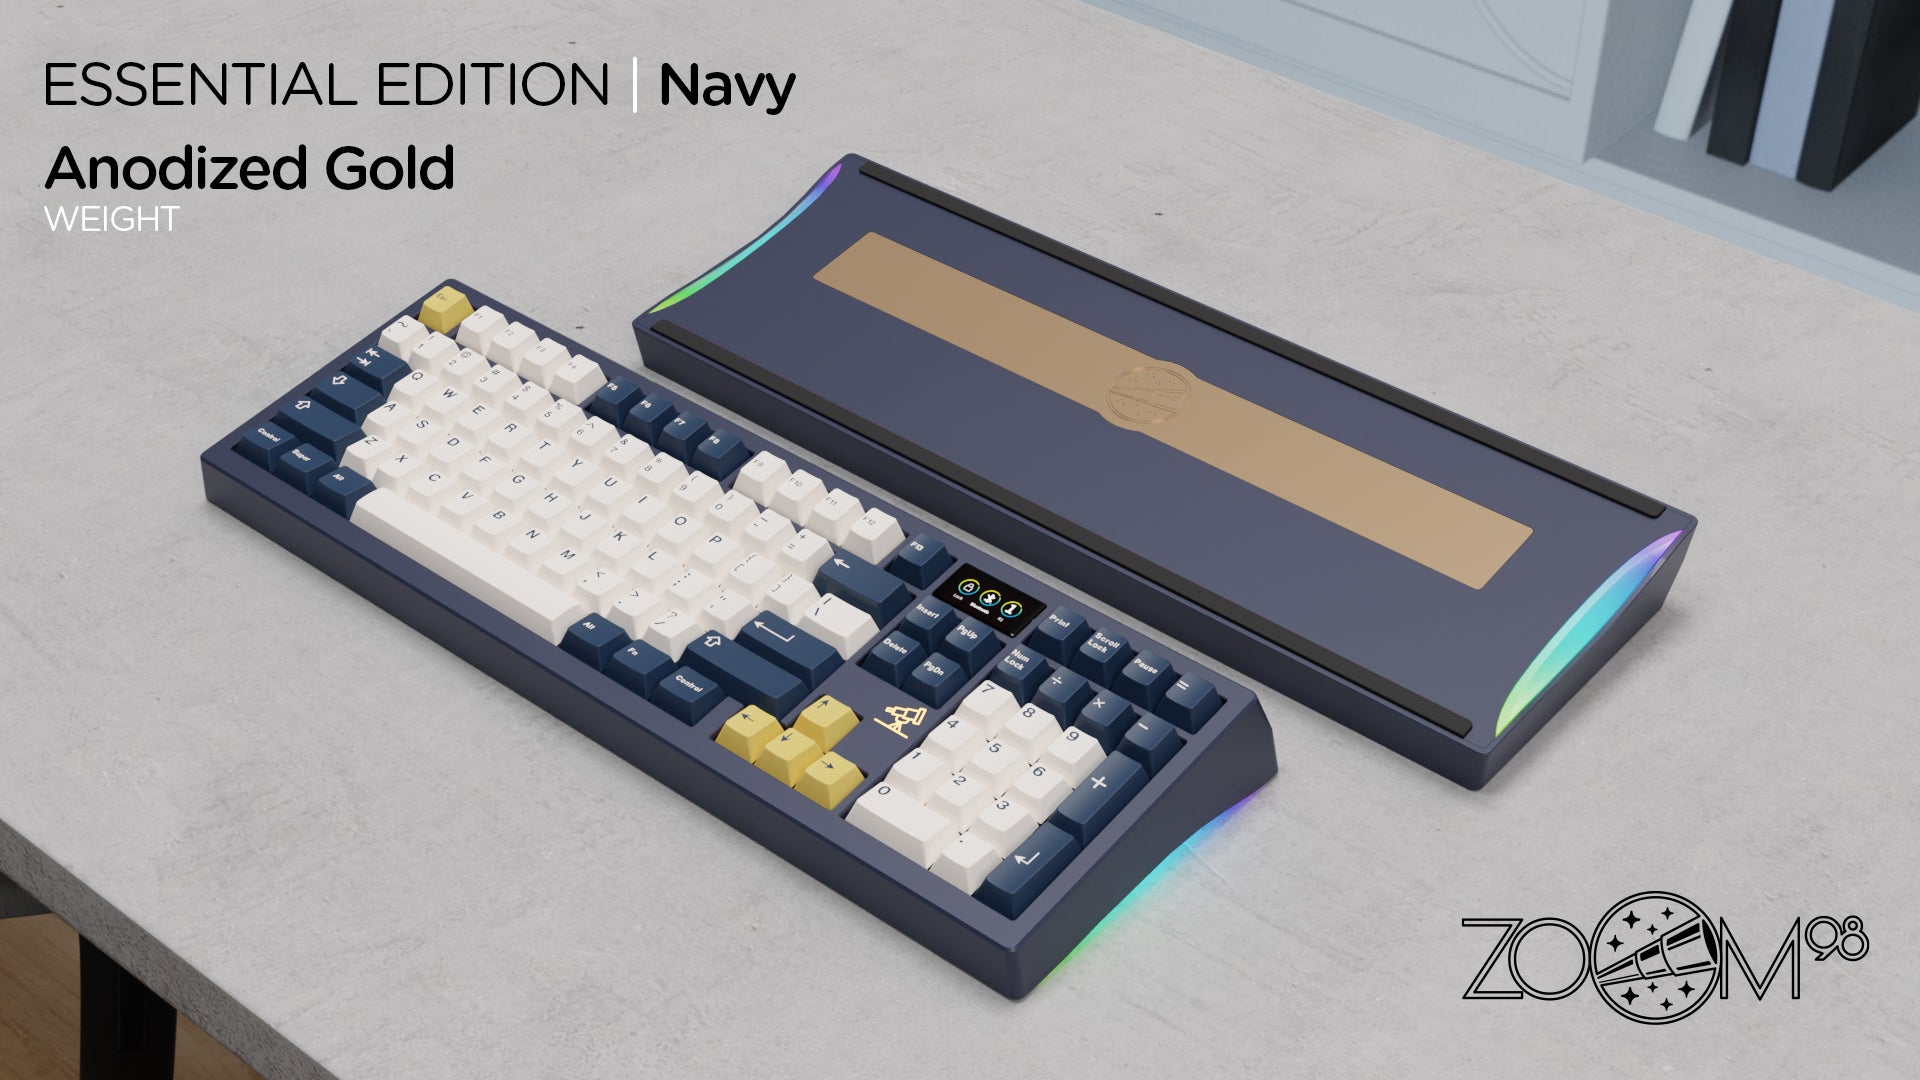 Zoom98 EE Navy